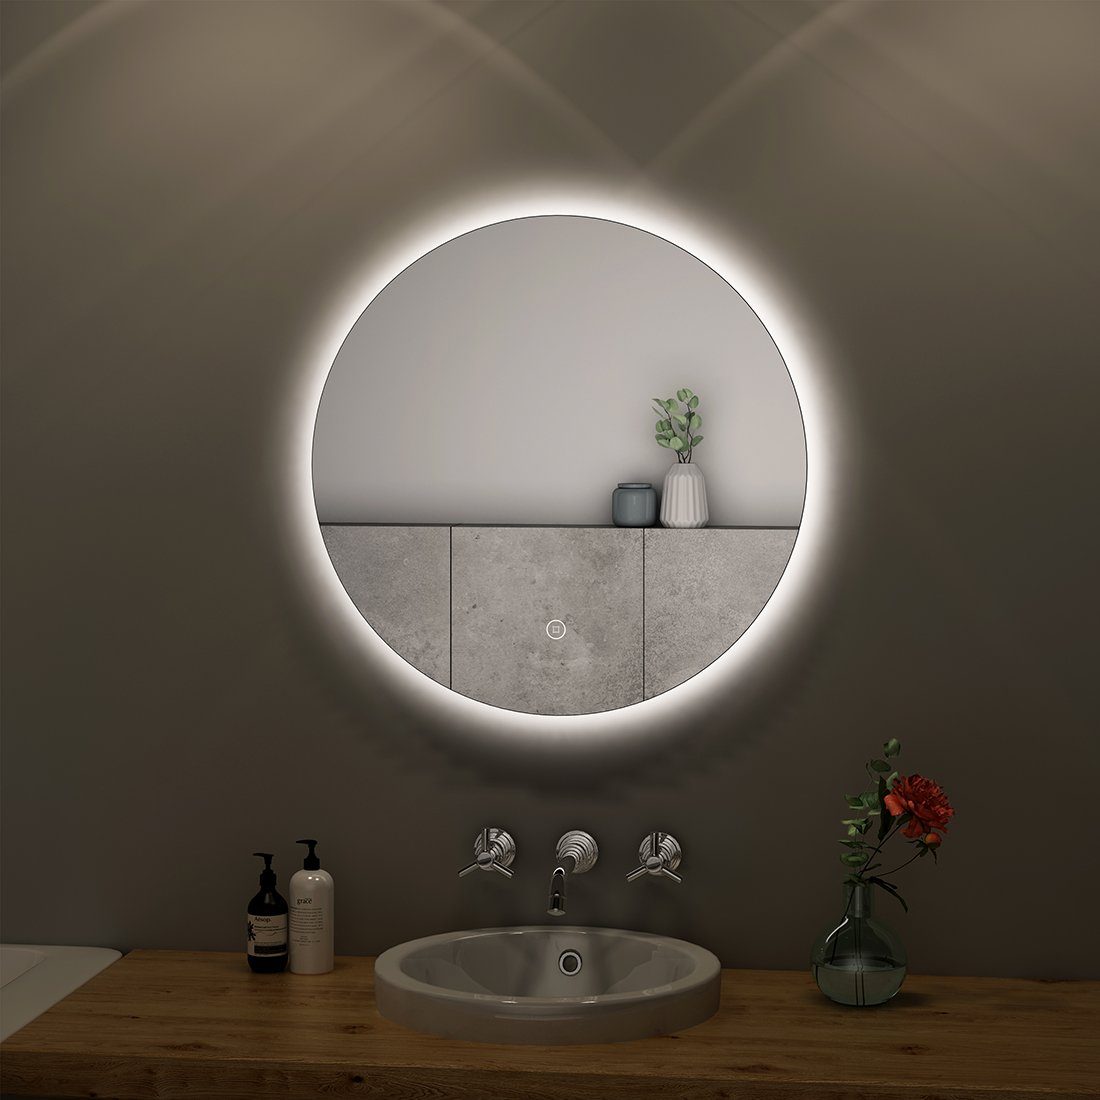  S'AFIELINA Badspiegel mit Ablage 45x60 cm Spiegel mit